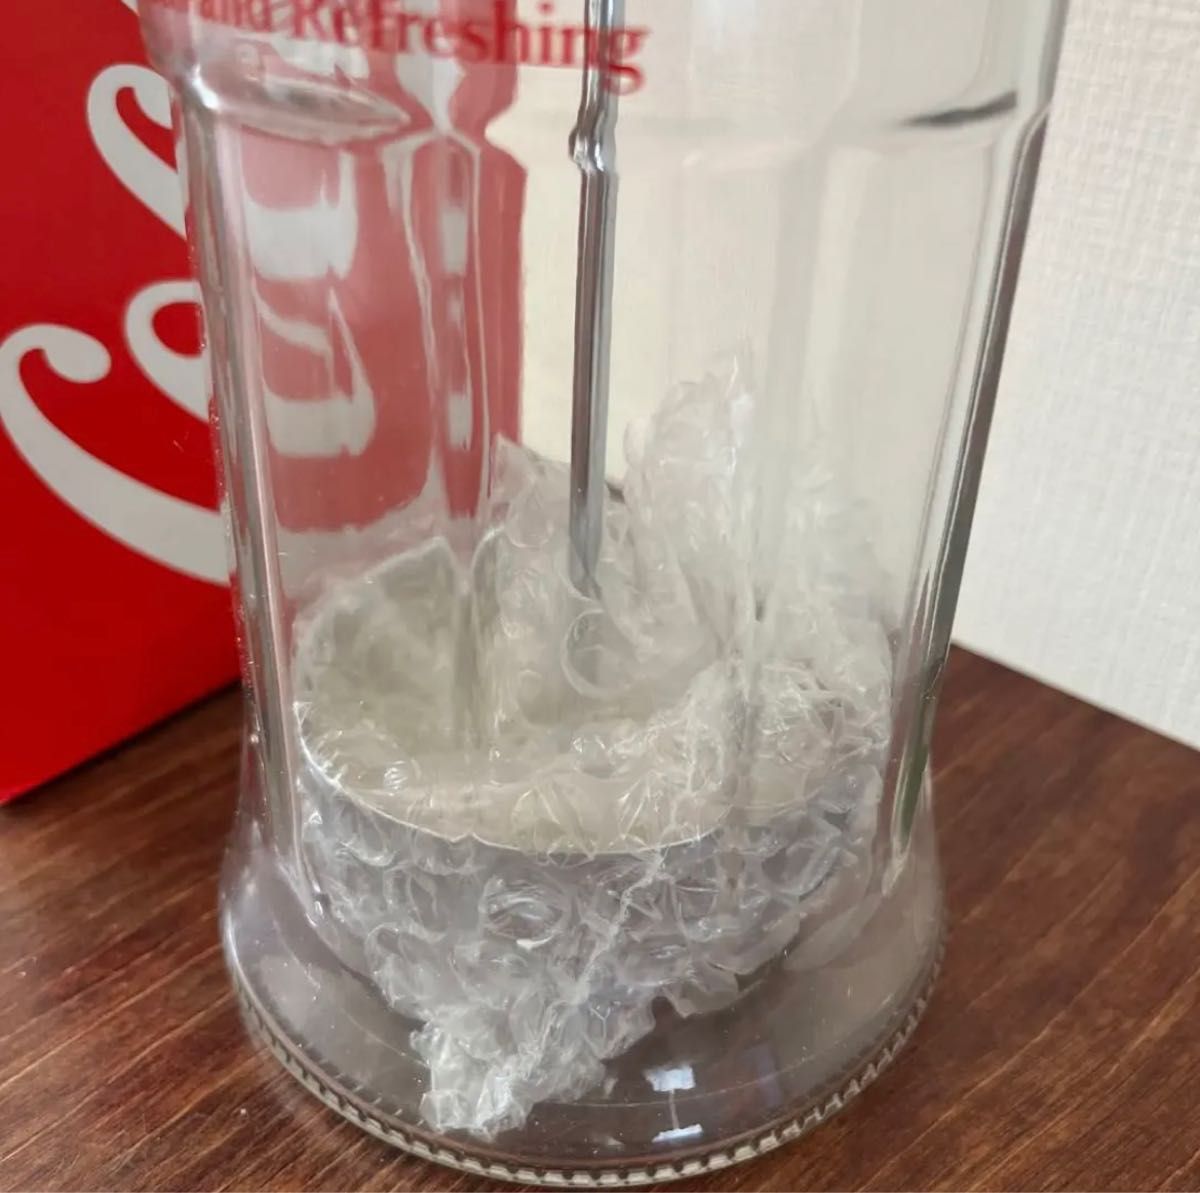 コカ・コーラ ブランド ストローディスペンサー - 使い捨て食器